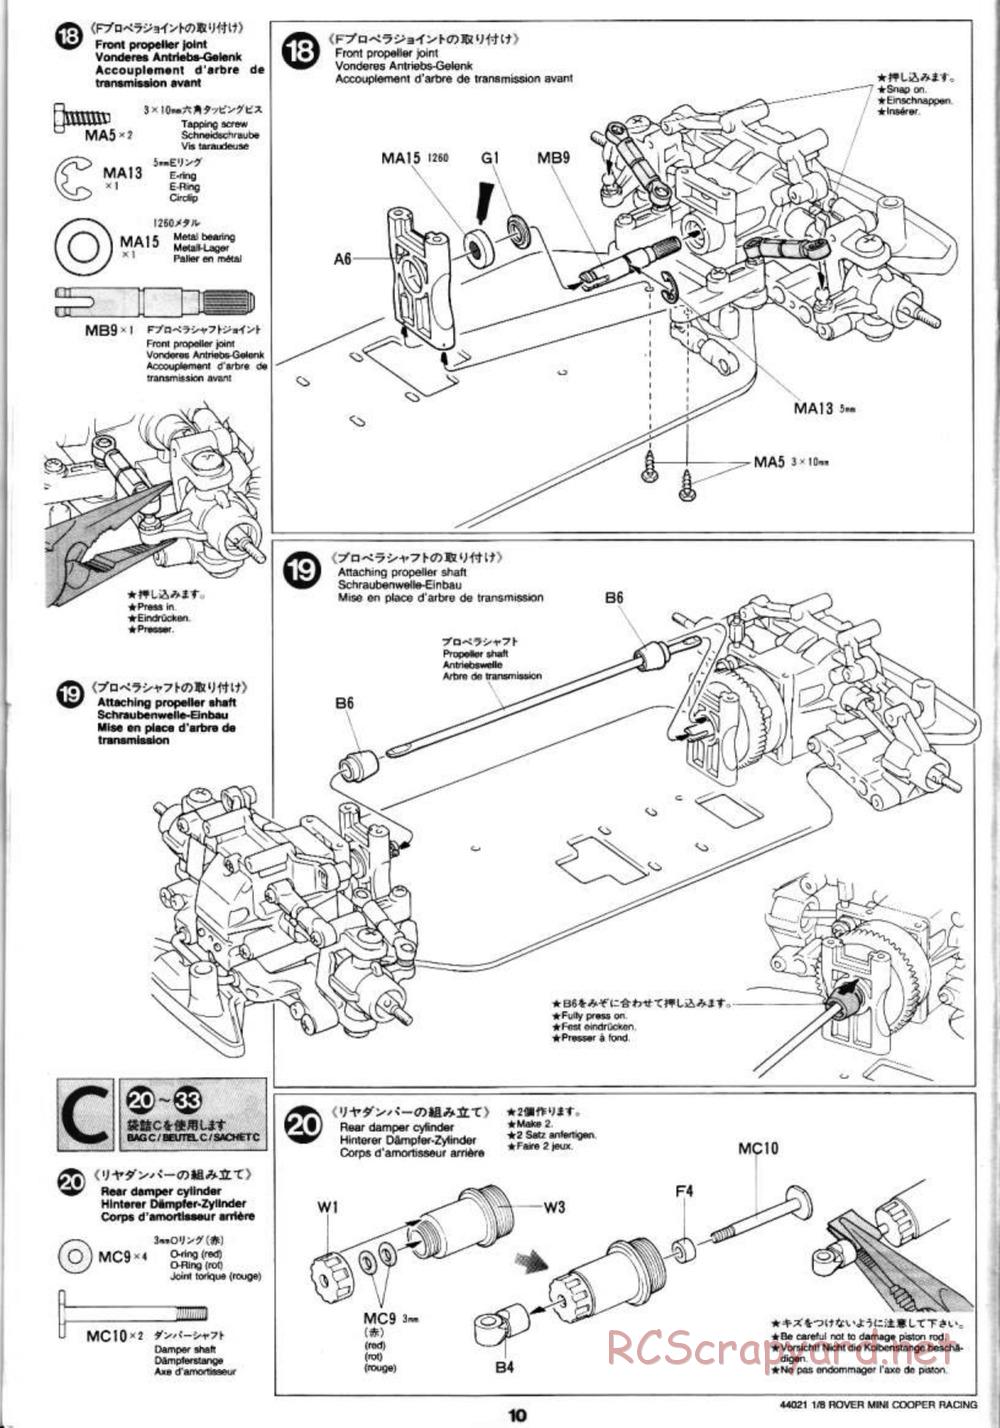 Tamiya - Rover Mini Cooper Racing - TG10 Mk.1 Chassis - Manual - Page 10